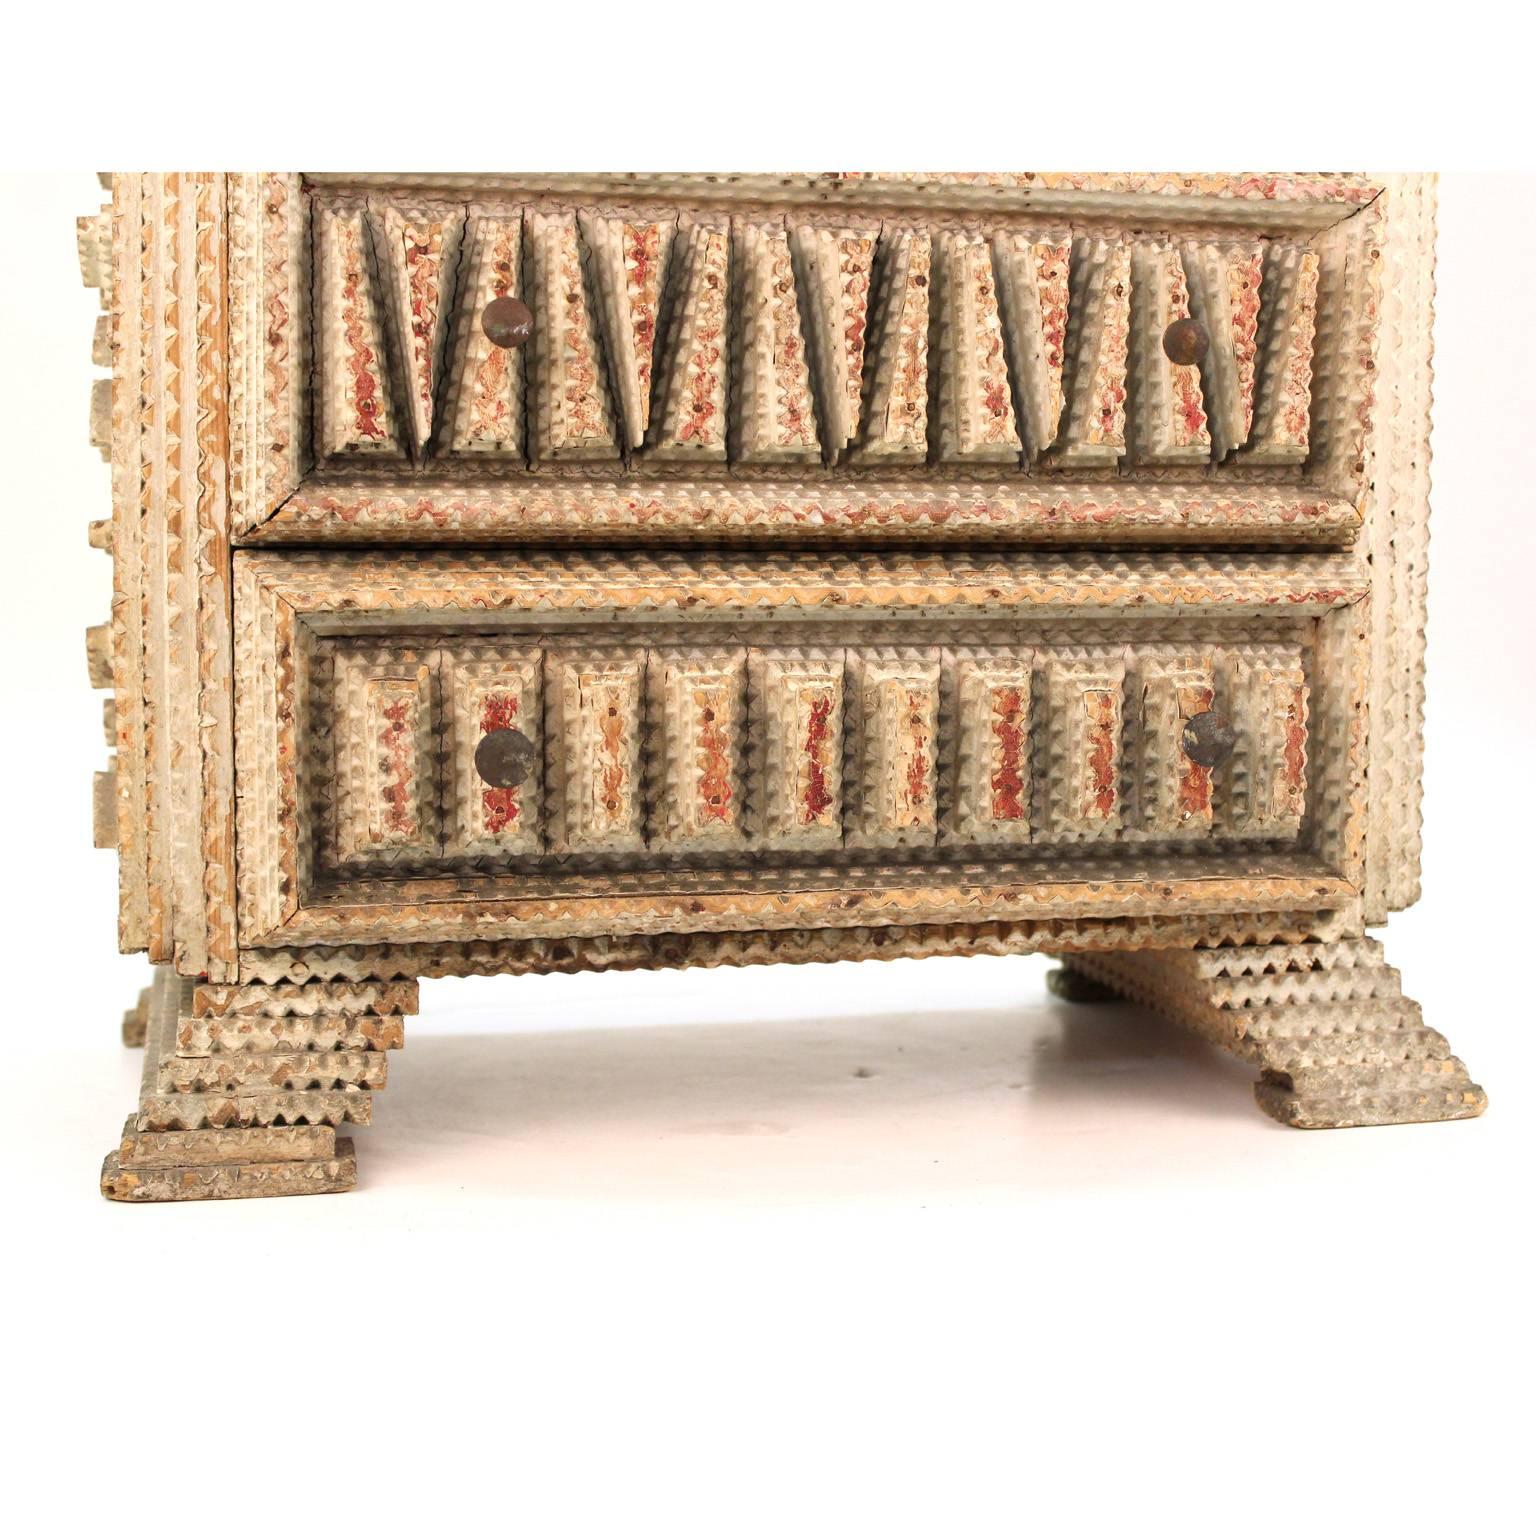 American Folk Art Tramp Art Miniature Wooden Dresser 3